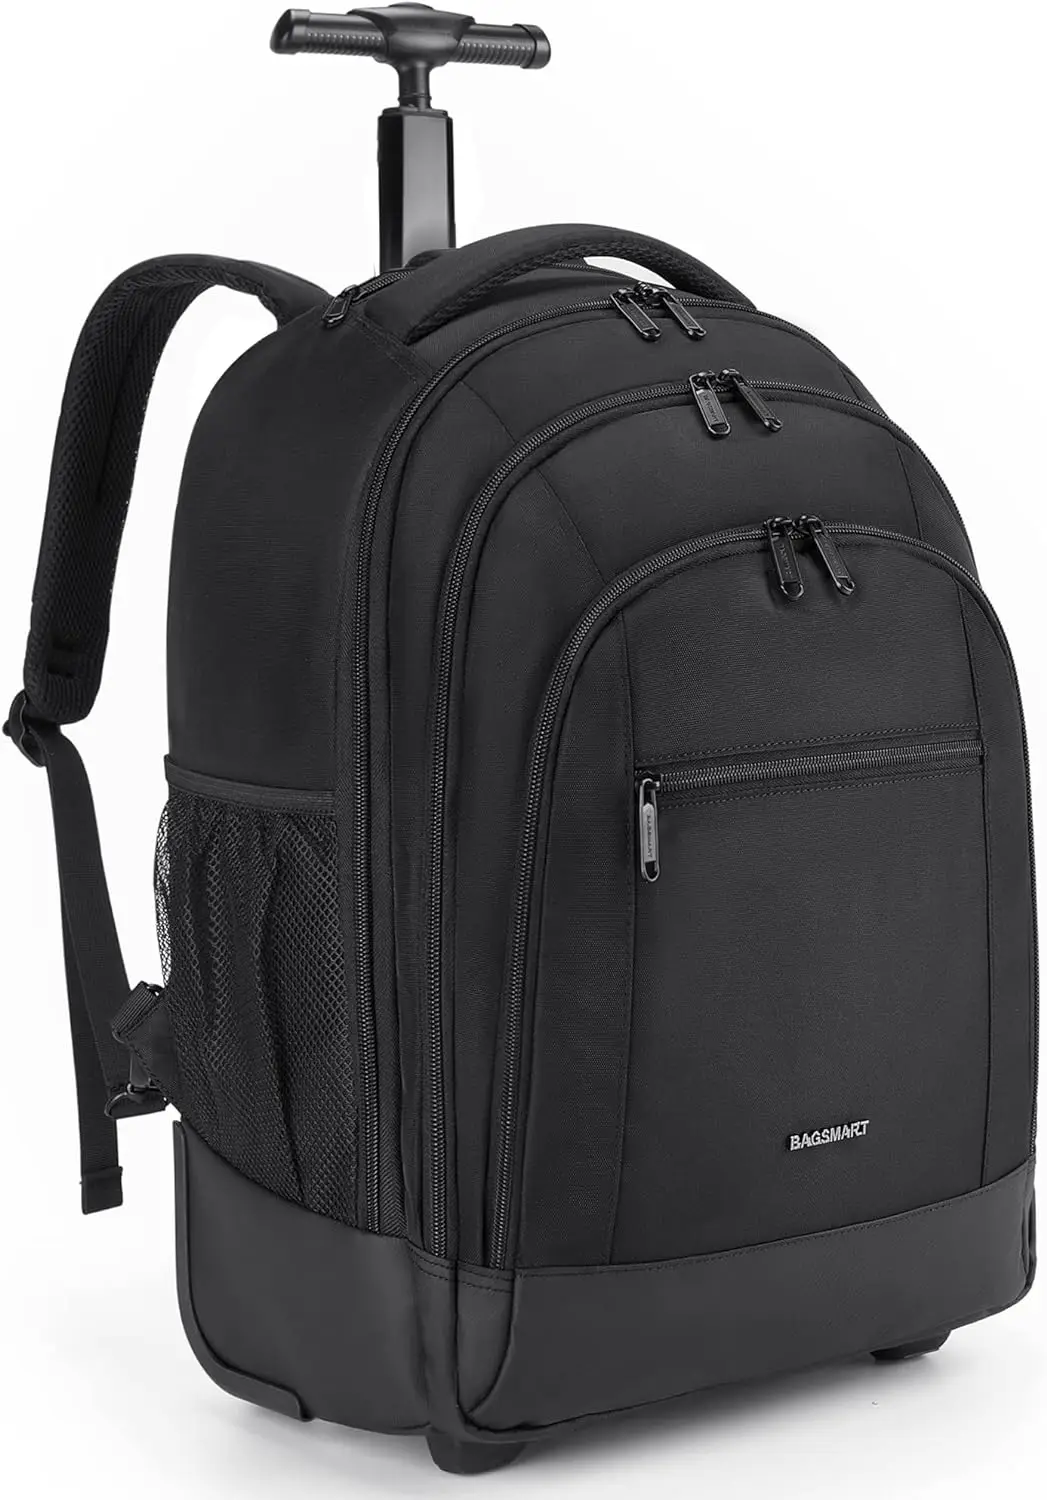 

Рюкзак на колесиках, водостойкий дорожный рюкзак для ноутбука с колесиками, большой роликовый рюкзак для колледжа, сумка на колесиках для компьютера, деловой